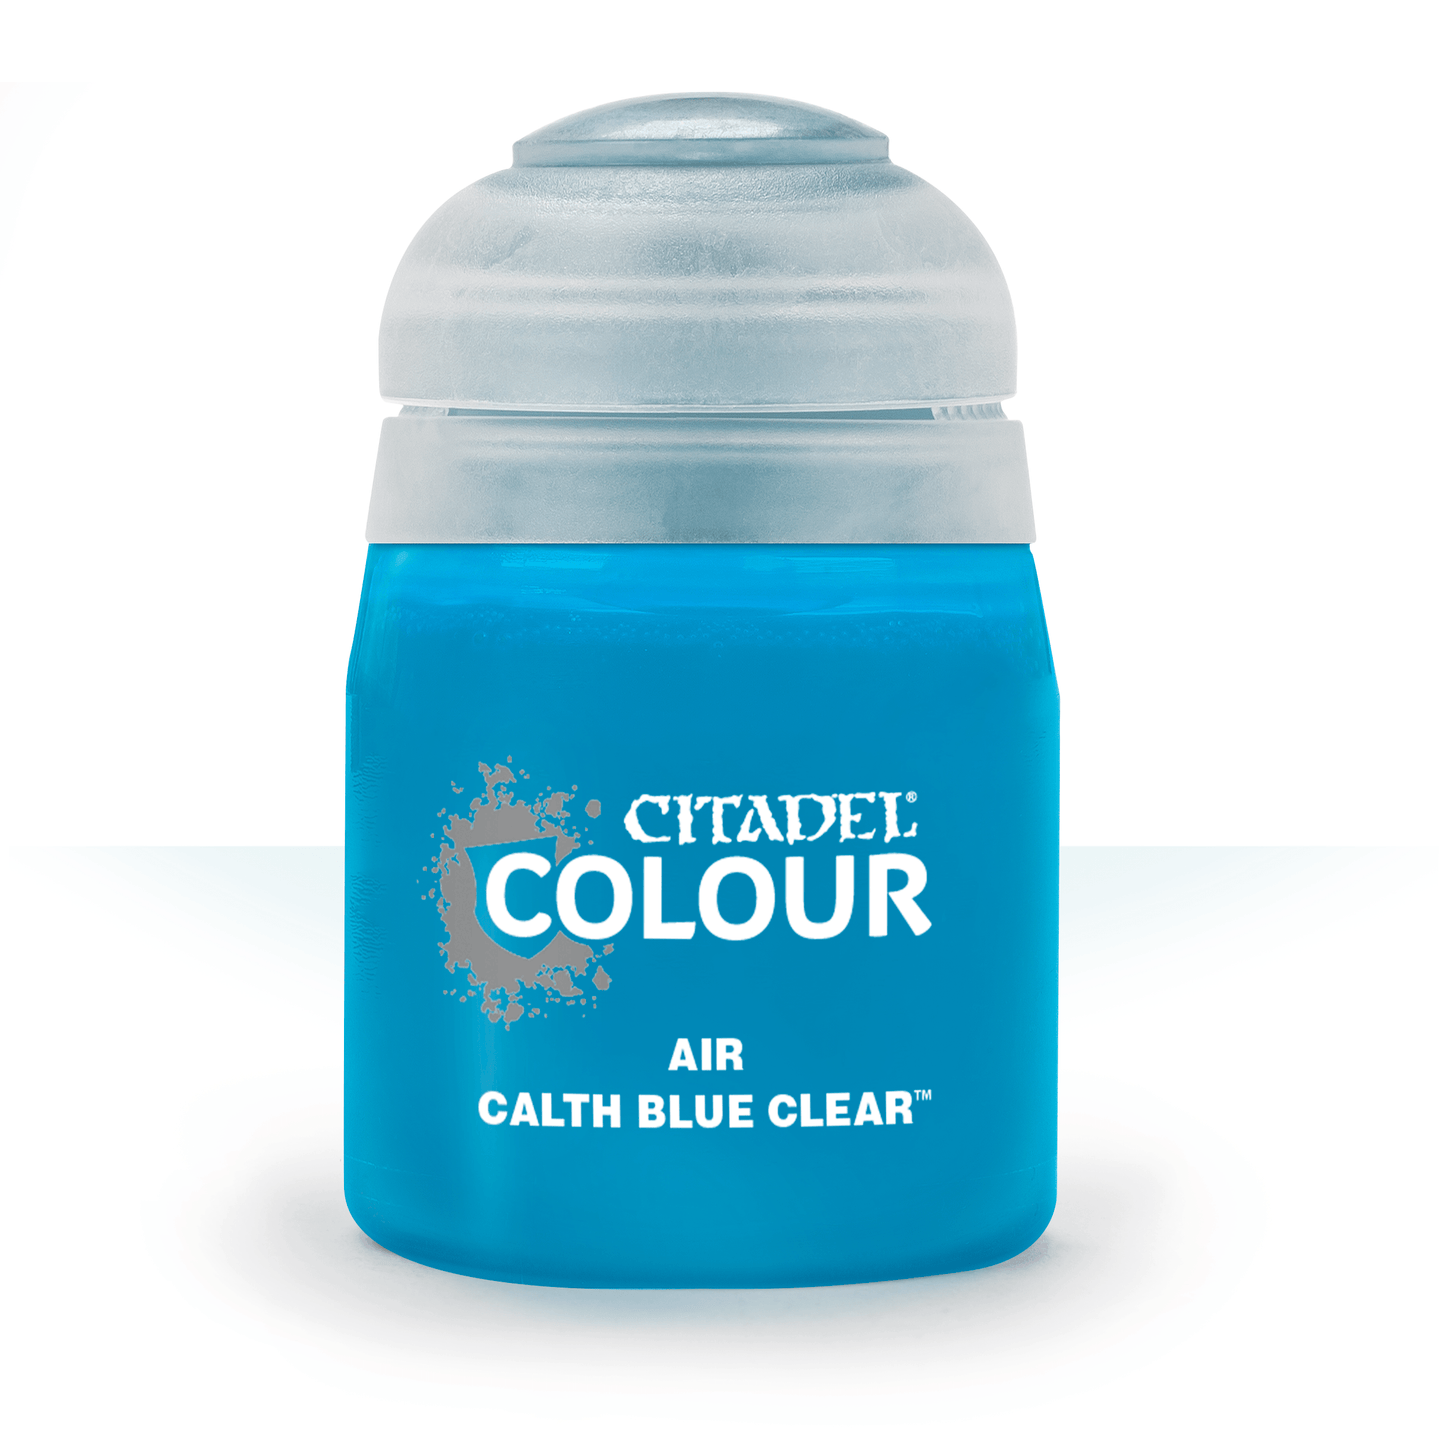 Calth Blue Clear - Air